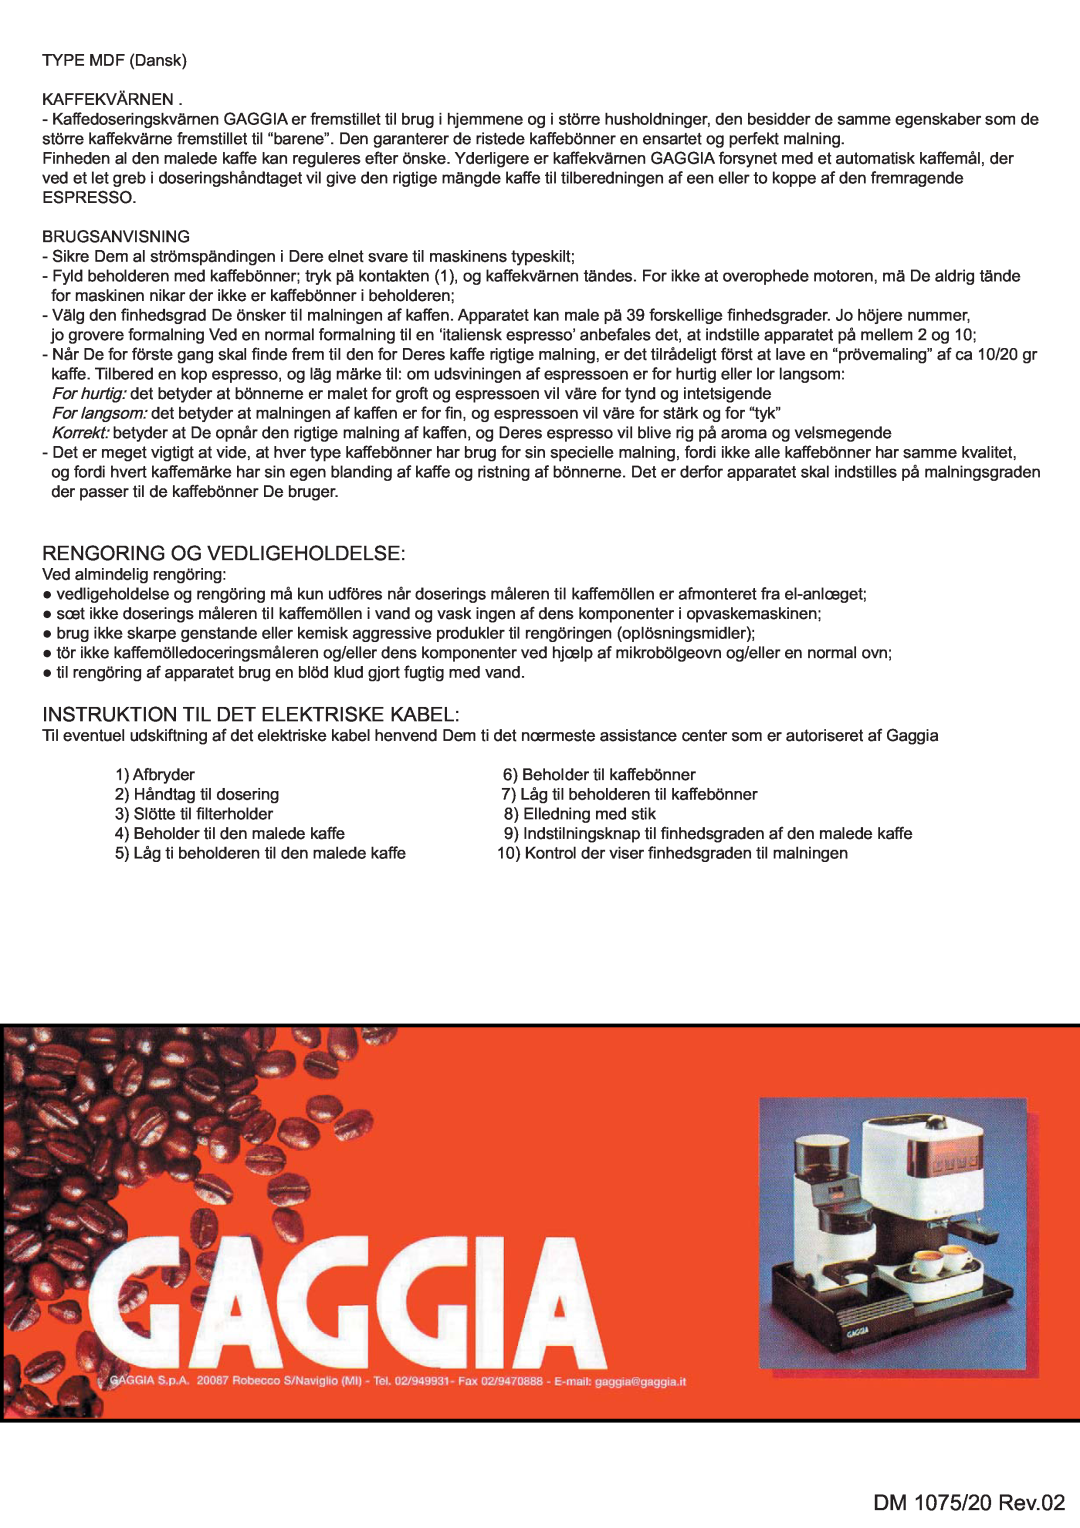 Gaggia 8002, MYUSA013 manual Rengoring Og Vedligeholdelse, Instruktion Til Det Elektriske Kabel, DM 1075/20 Rev.02 